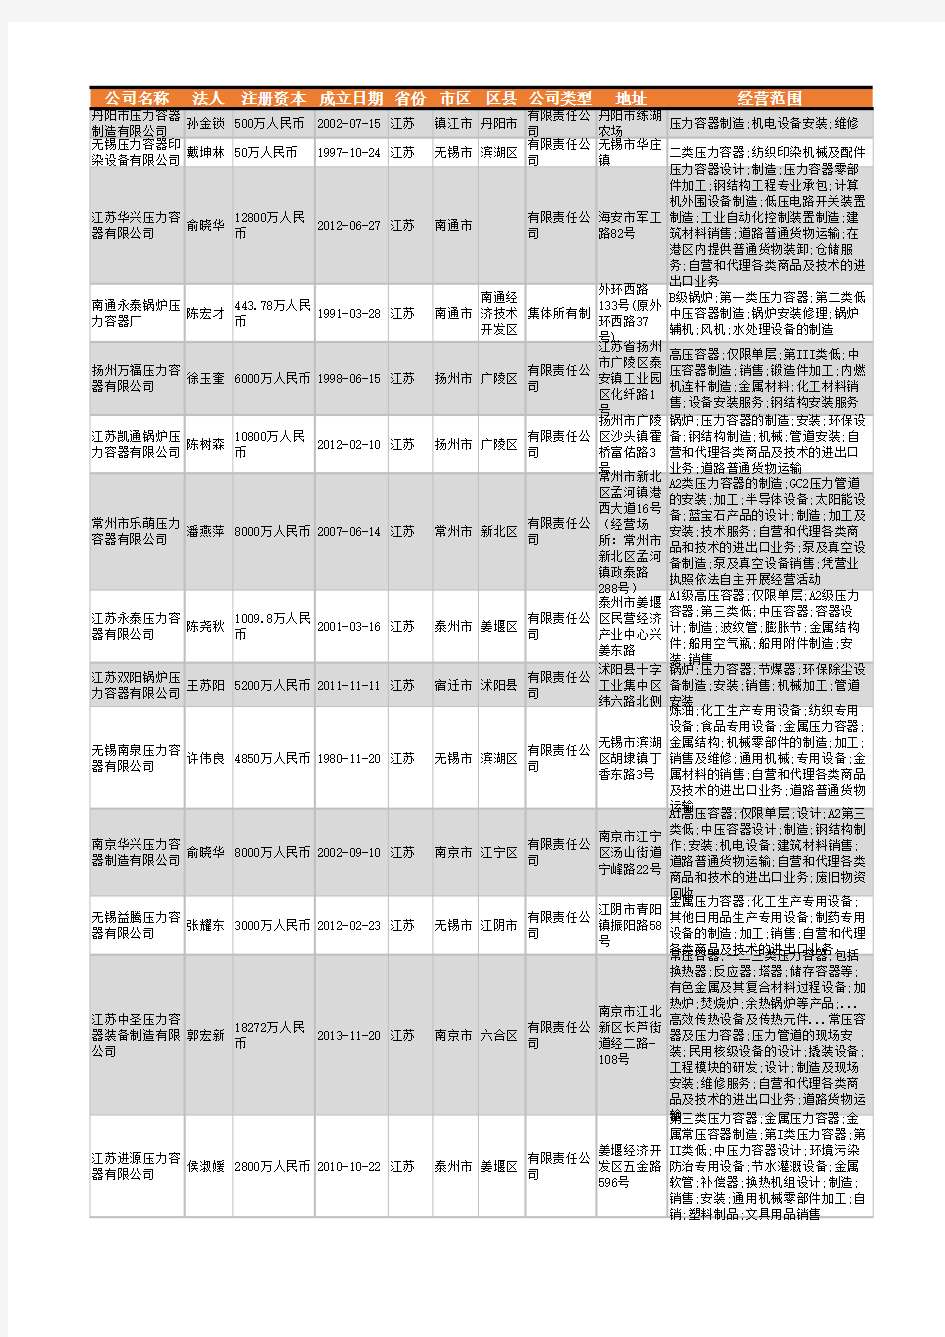 2021年江苏省压力容器行业企业名录6264家